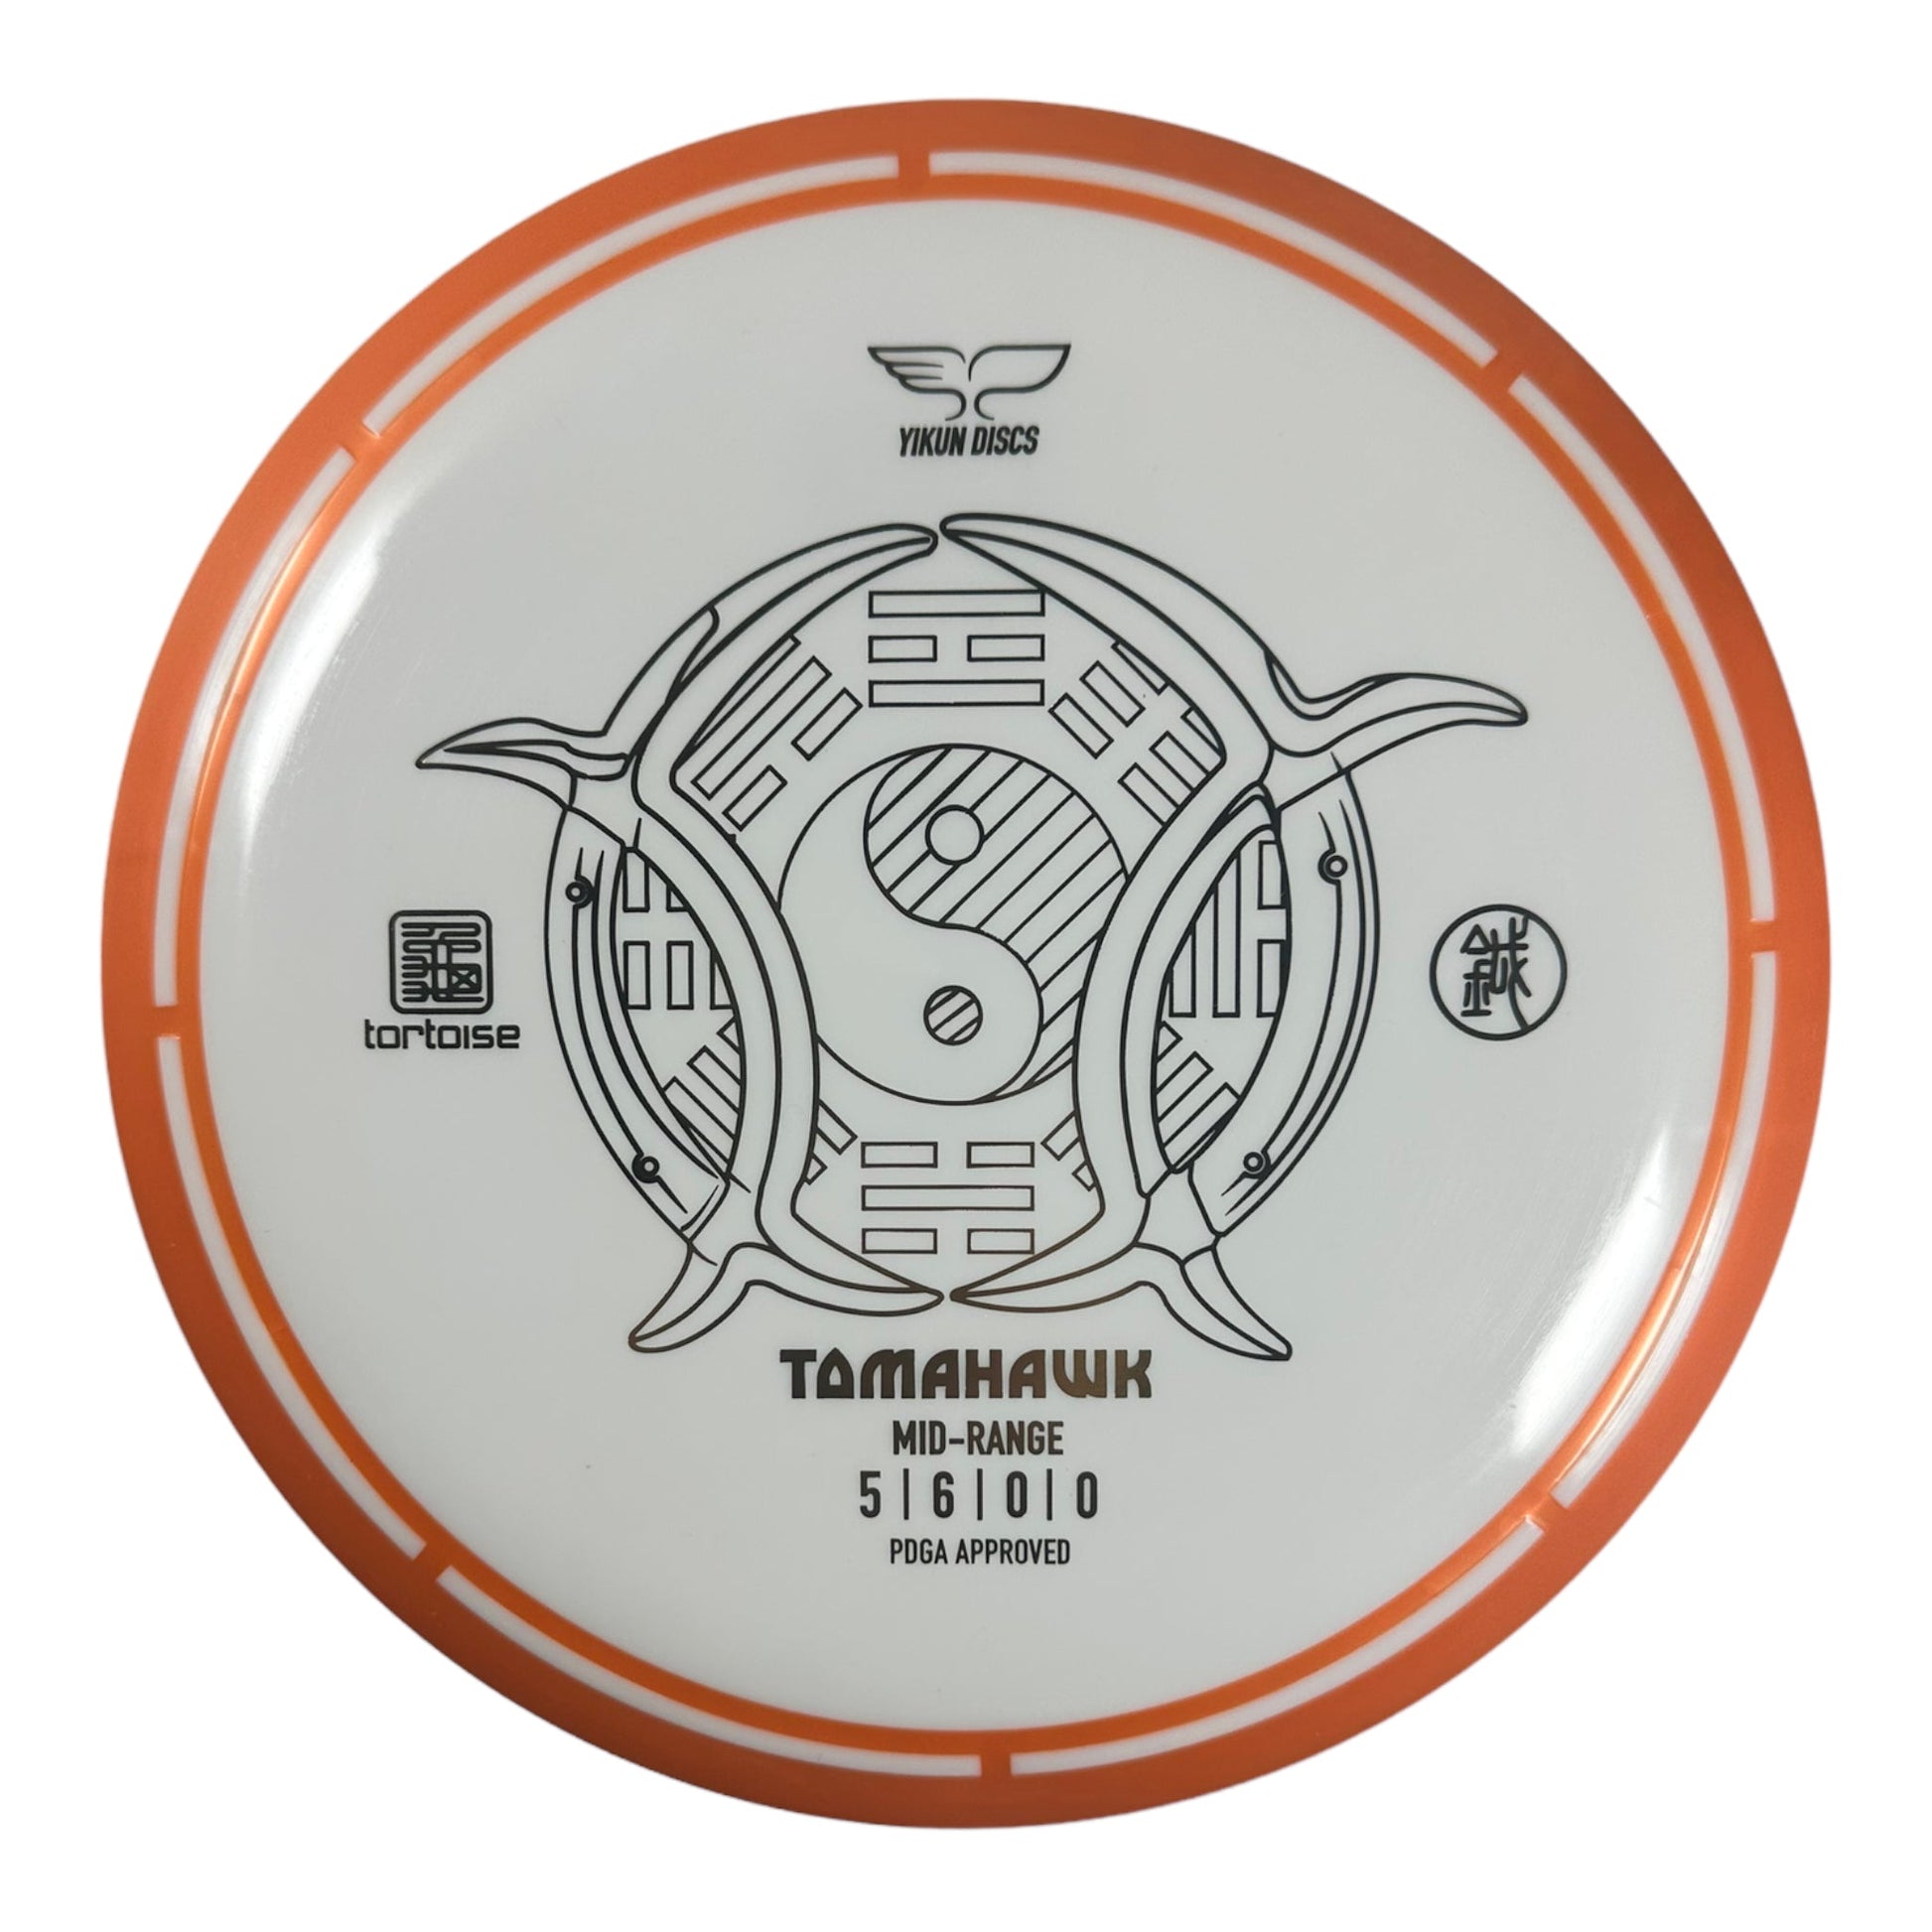 Yikun Discs Tomahawk | Tortoise | Orange/Gold 174g Disc Golf